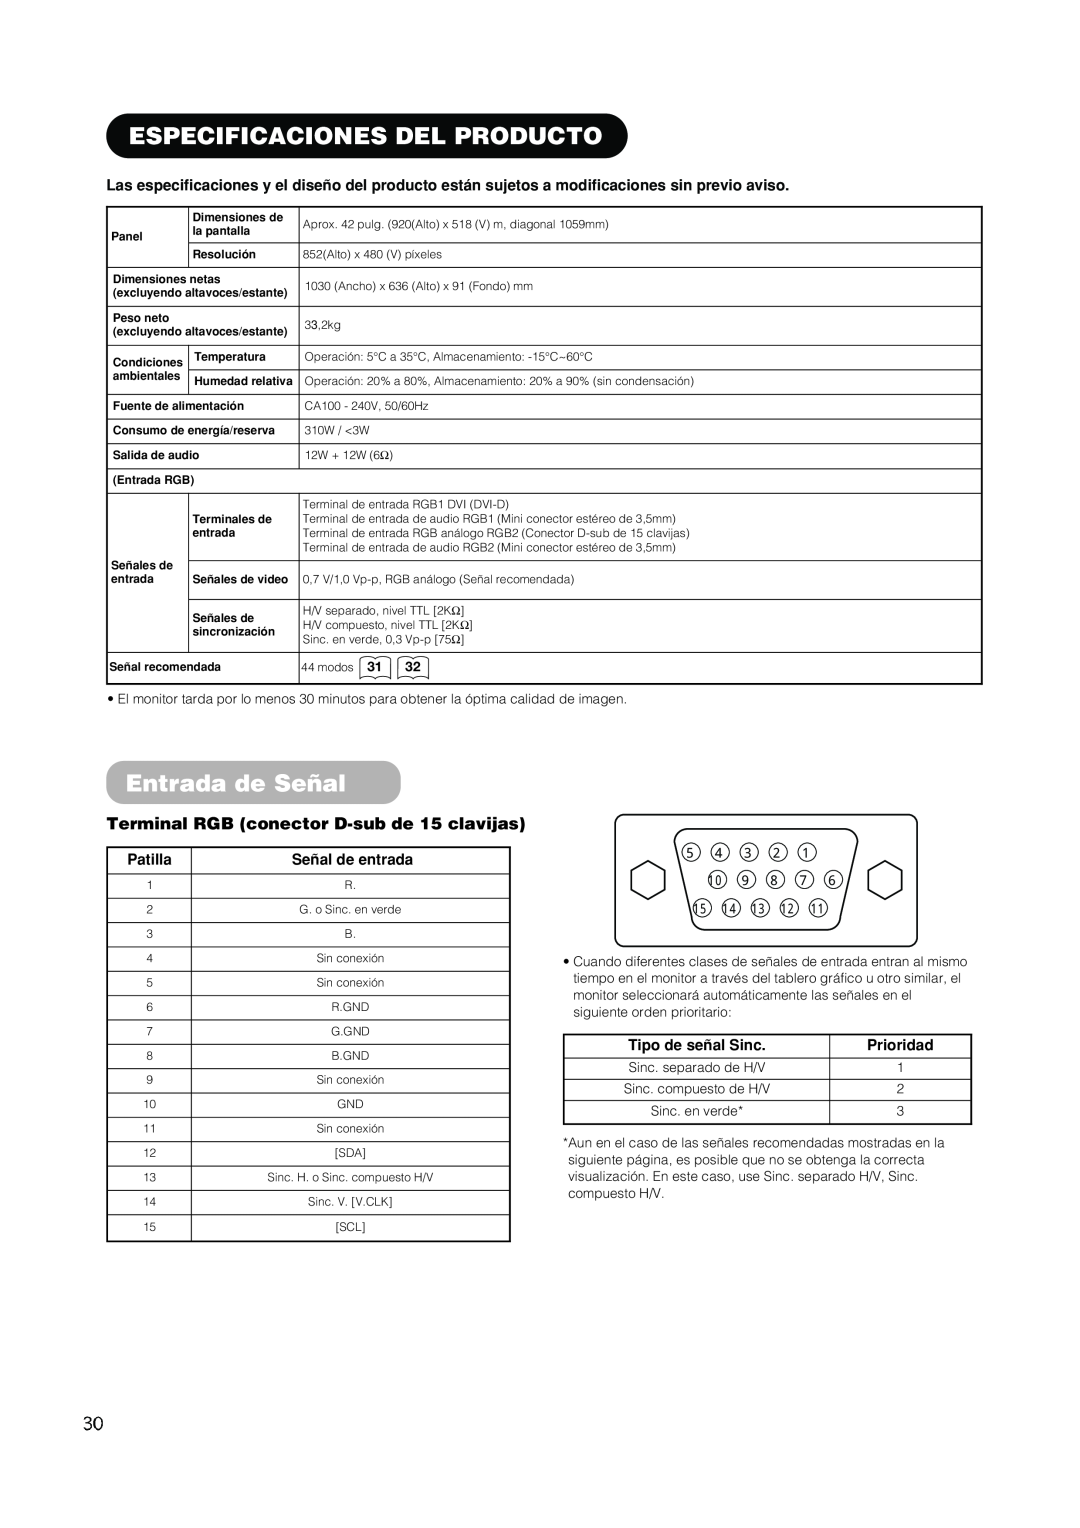 Hitachi PW1A Especificaciones Del Producto, Entrada de Señal, Terminal RGB conector D-sub de 15 clavijas, Patilla 